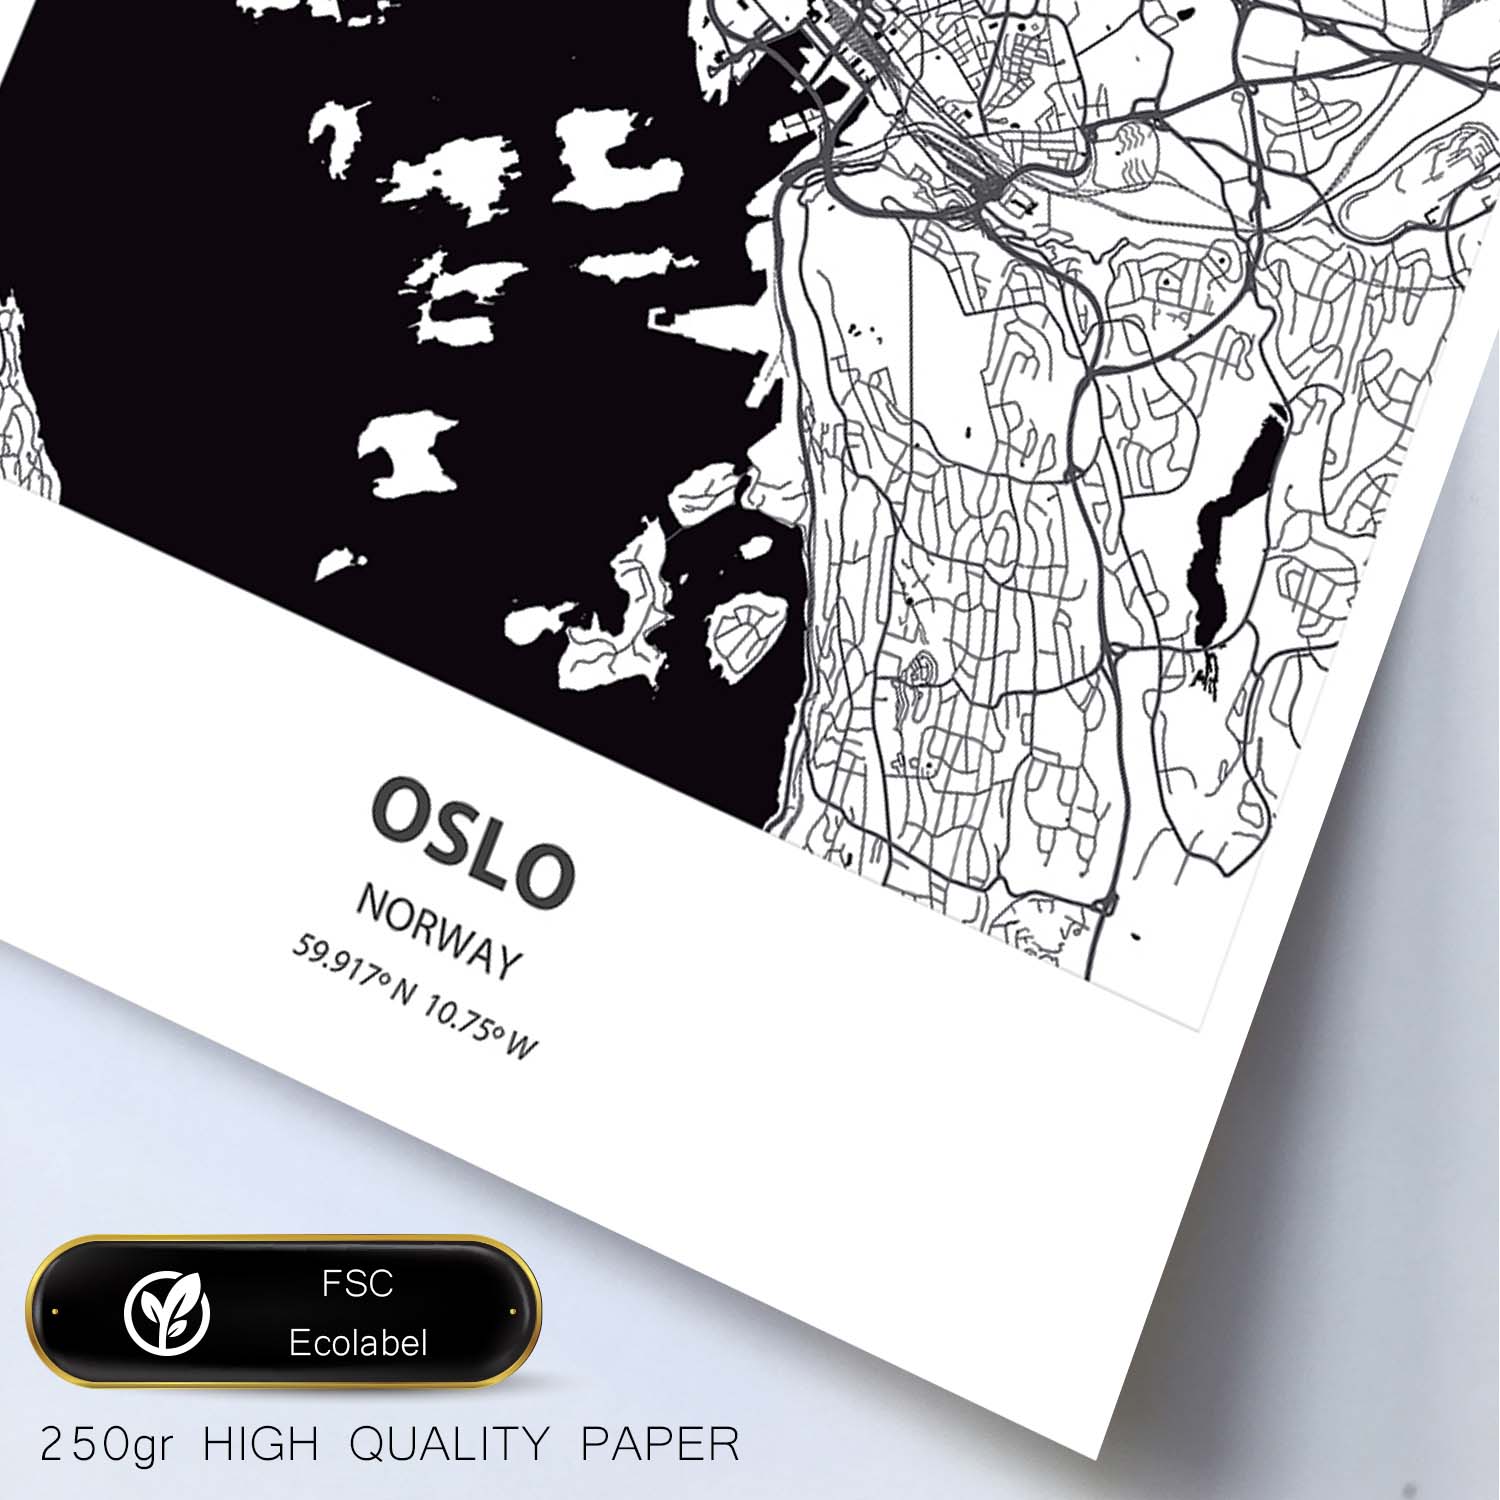 Poster con mapa de Oslo - Noruega. Láminas de ciudades del norte de Europa con mares y ríos en color negro.-Artwork-Nacnic-Nacnic Estudio SL